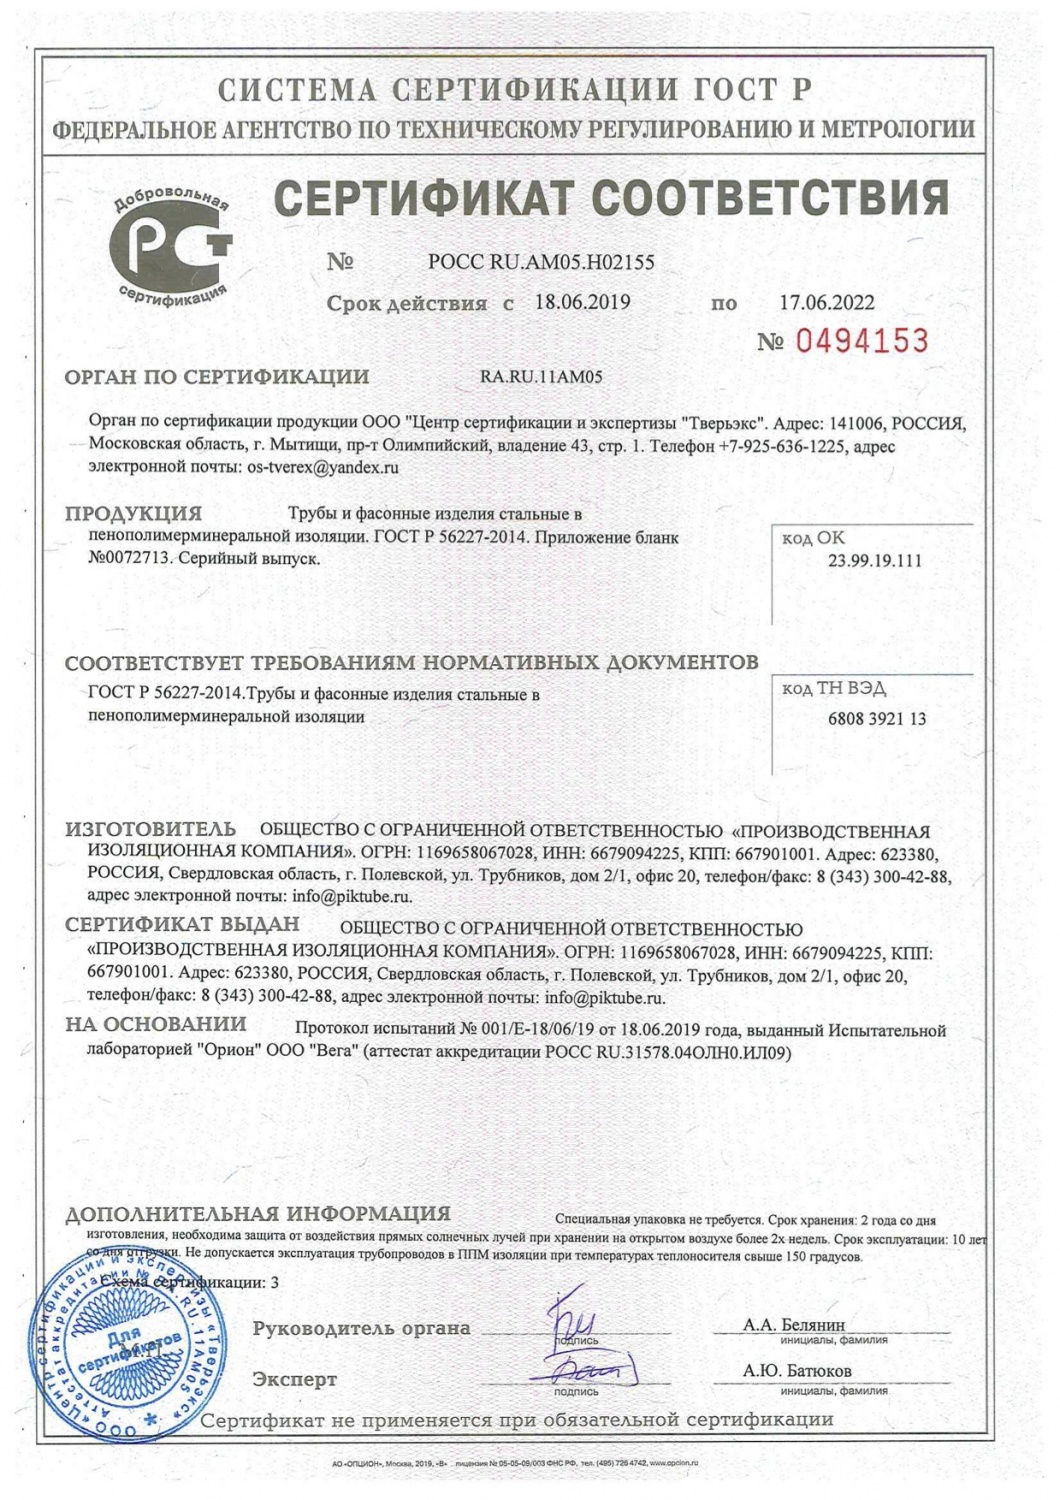 Сертификат соответствия ГОСТ Р 56227-2014